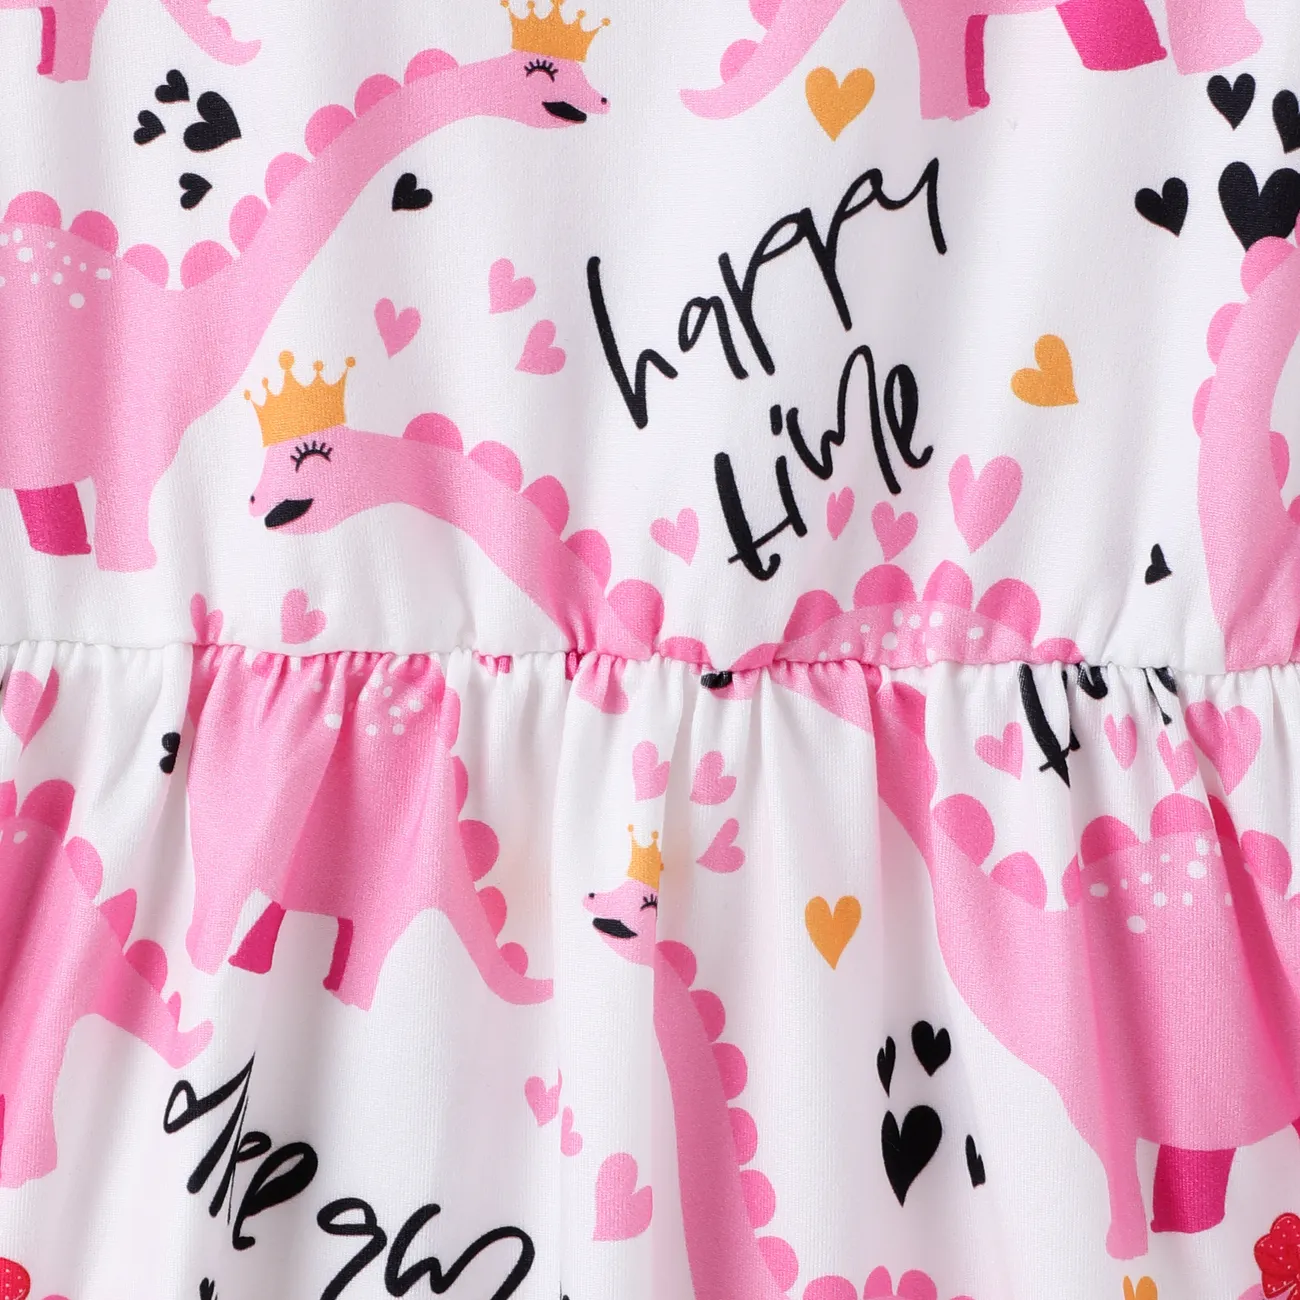 Toddler Girl Animal Dinosaur Print Sleeveless Dress Pink big image 1